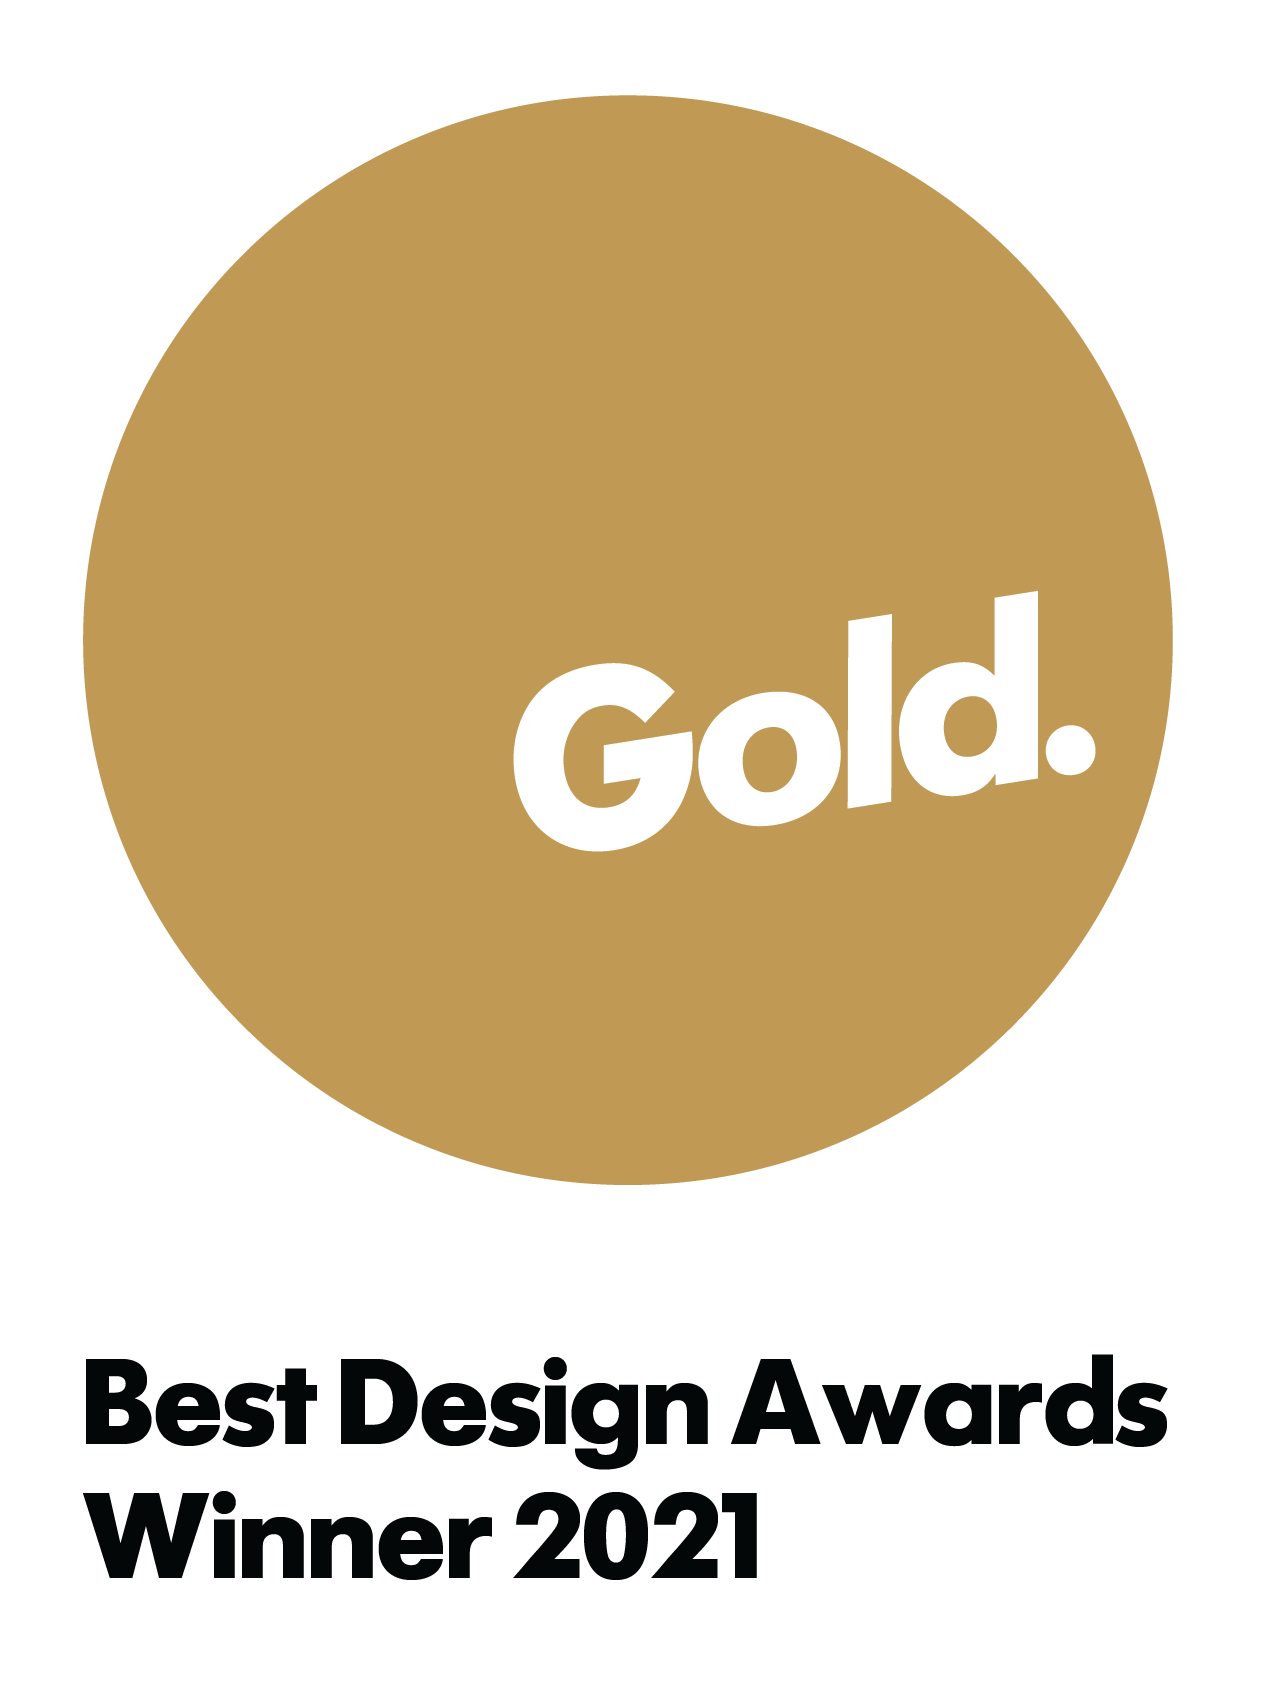 Best Design Awards Winner 2021 Badge